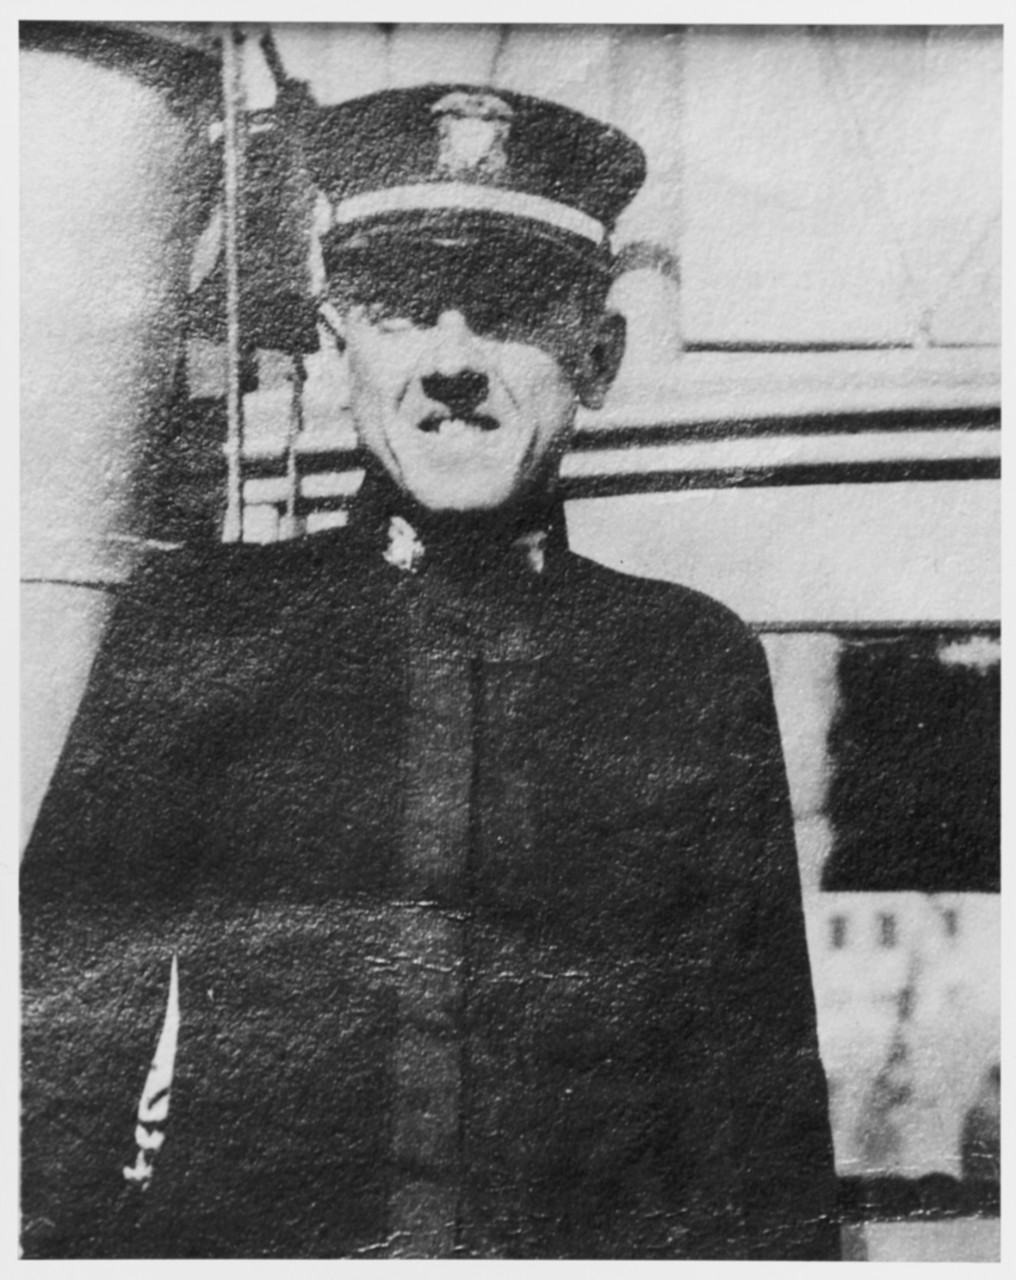 Ensign William W. Ball, USNRF